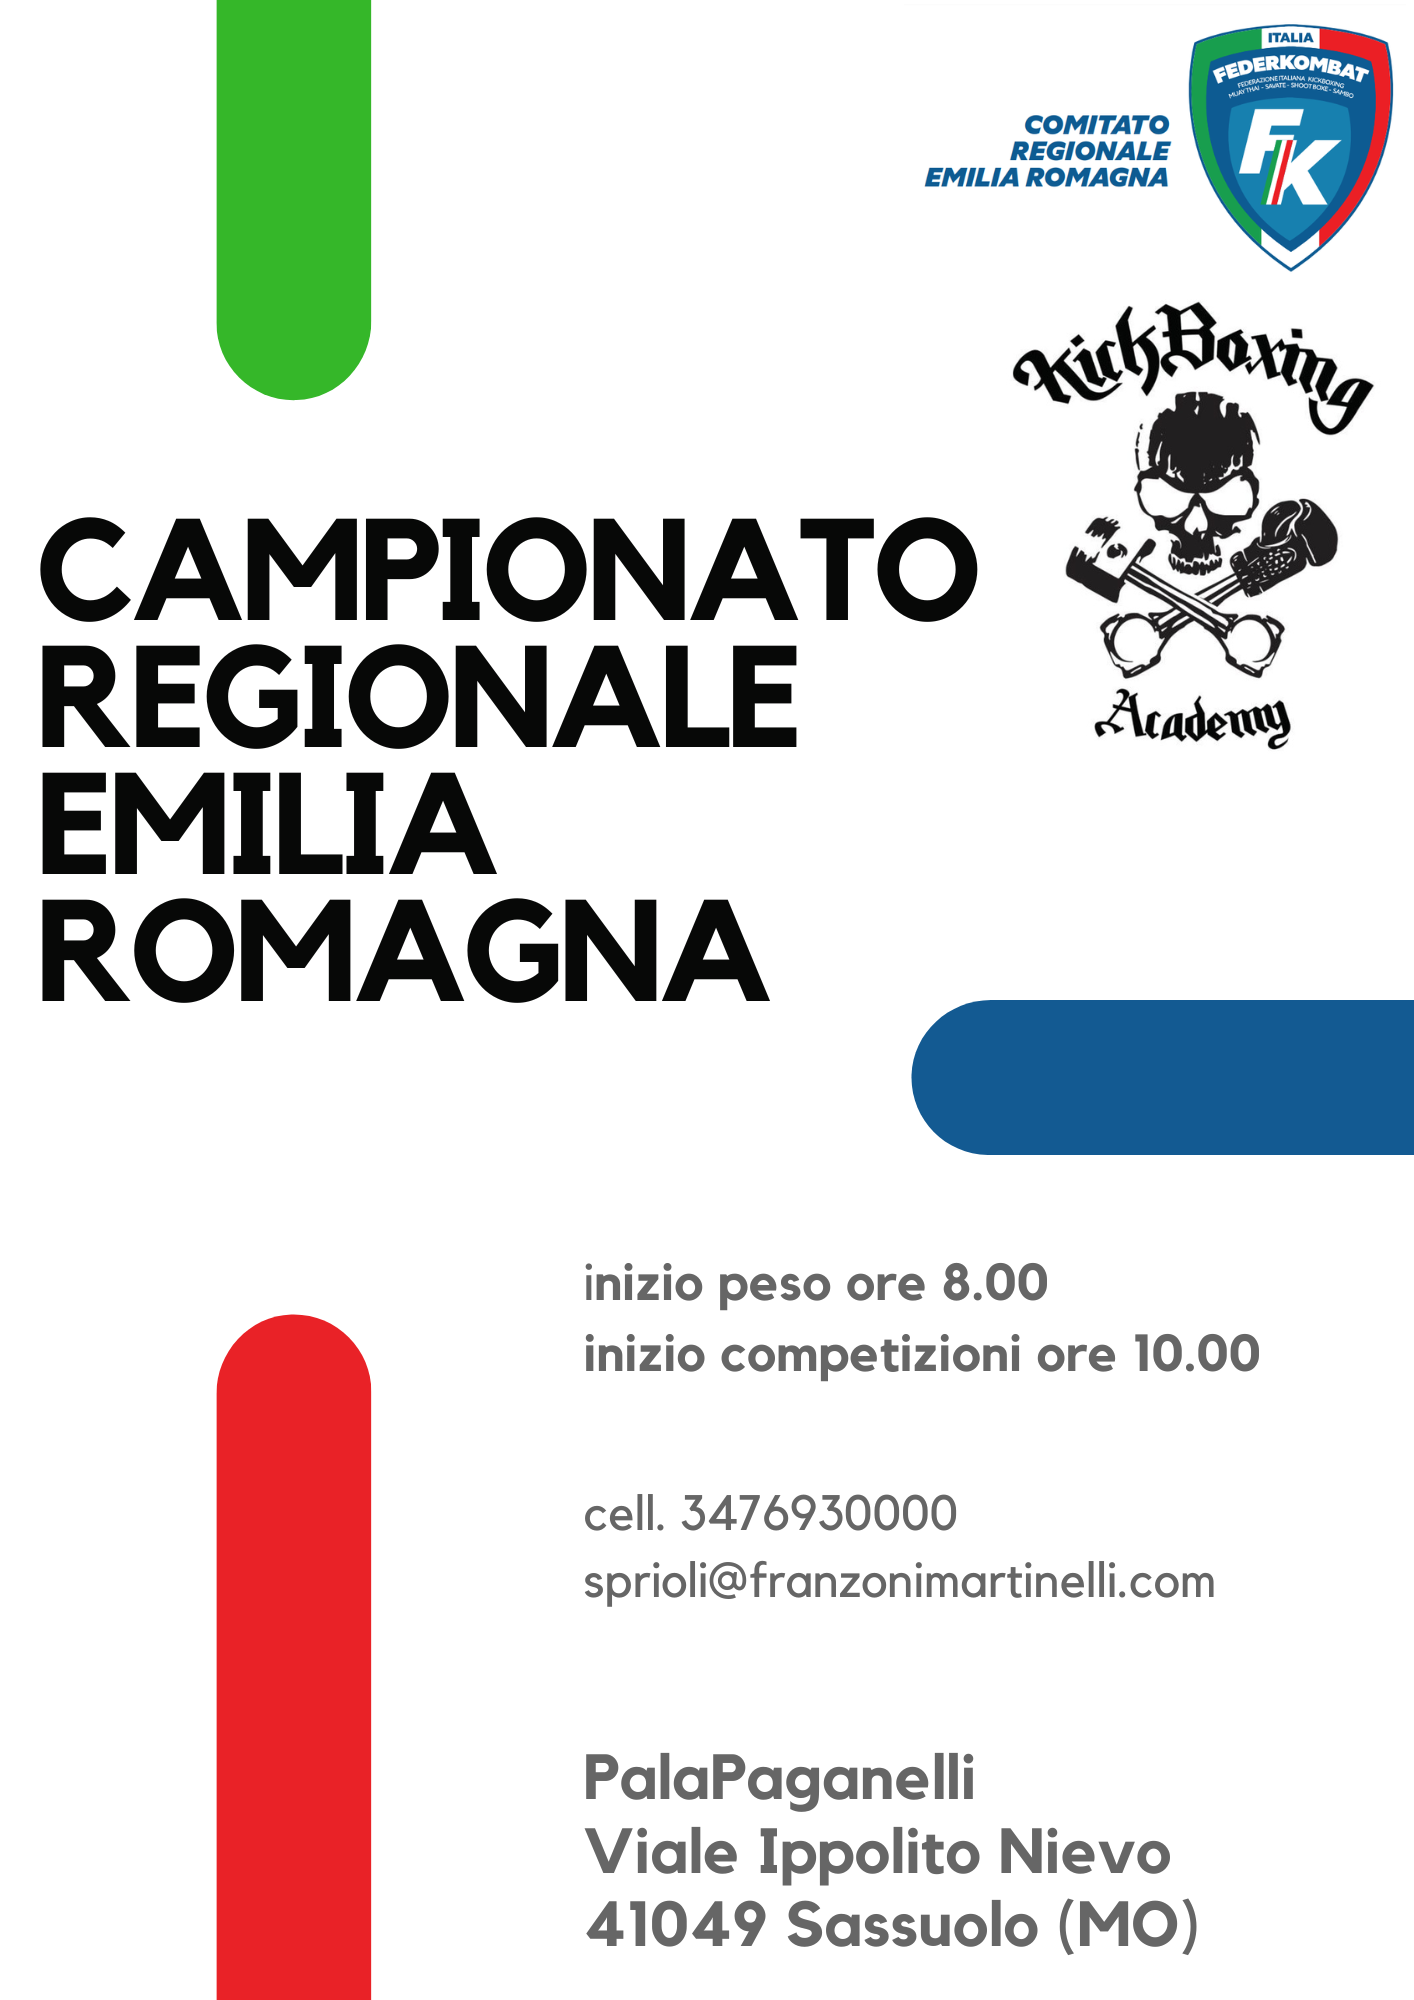 CAMPIONATO REGIONALE EMILIA ROMAGNA